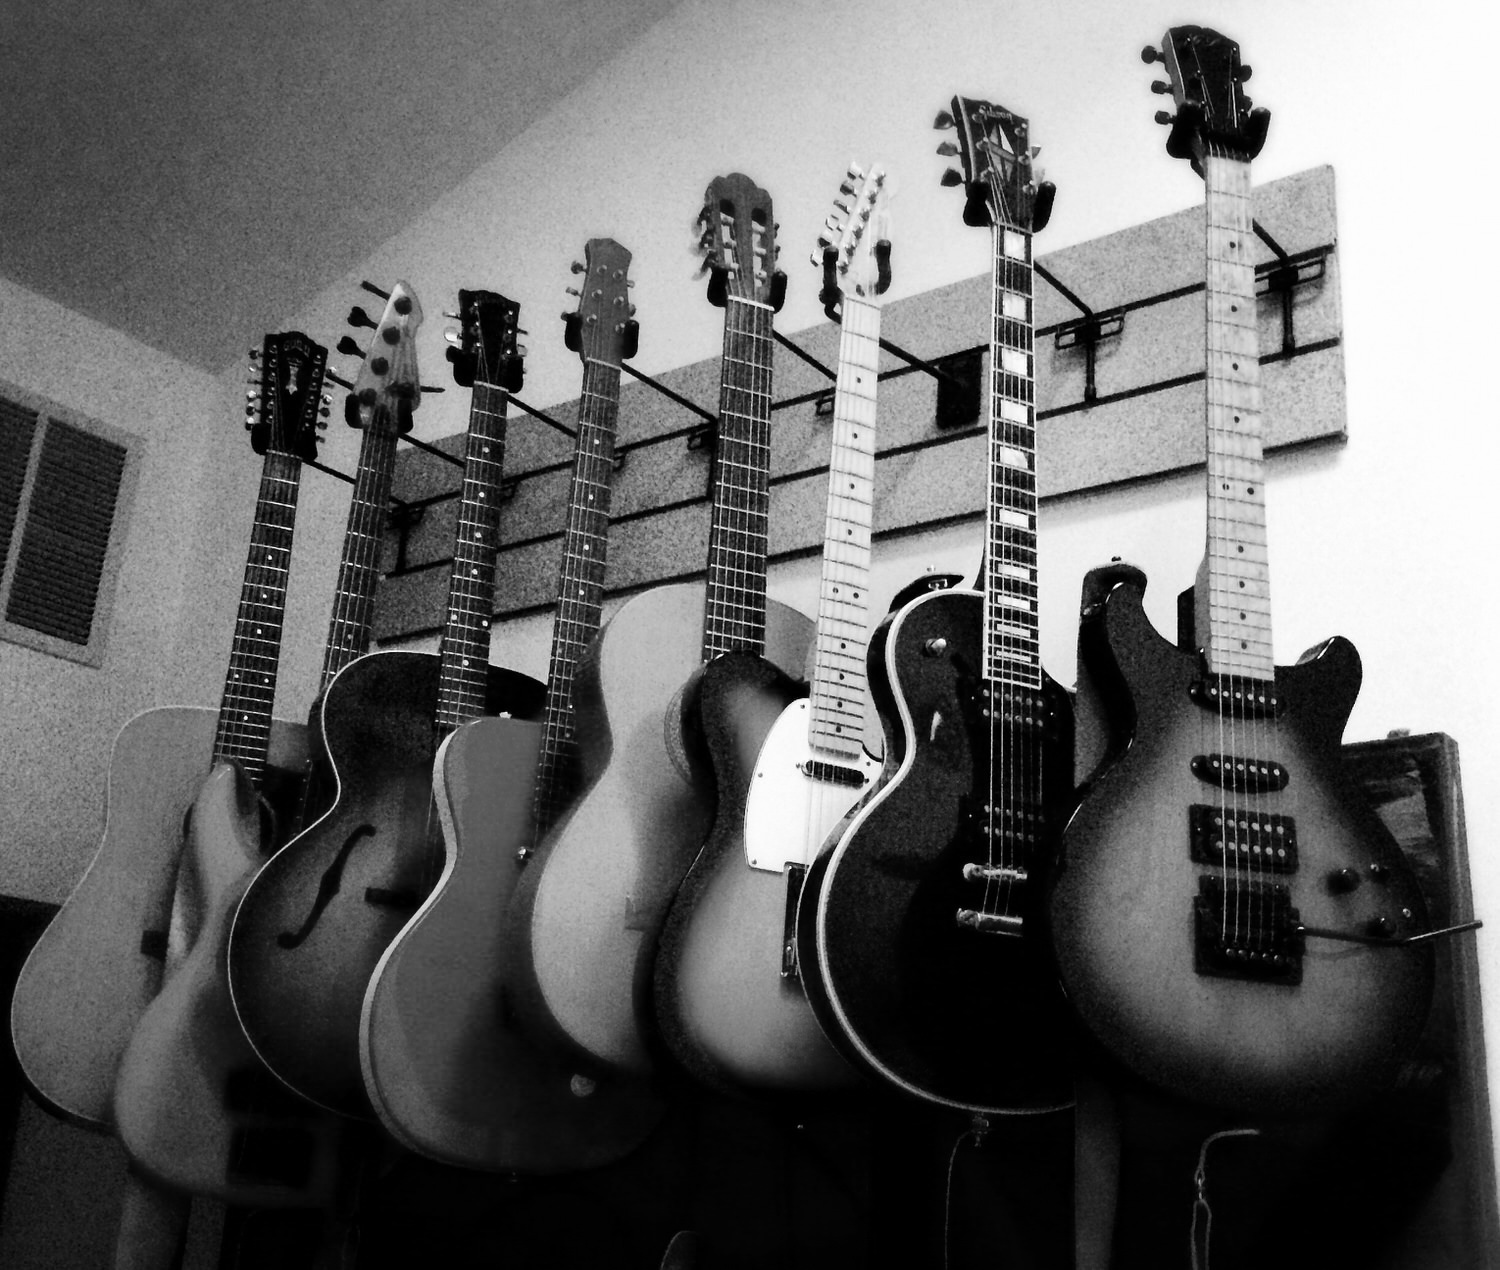 Guitars On Wall 03-jpmini b&w.jpg